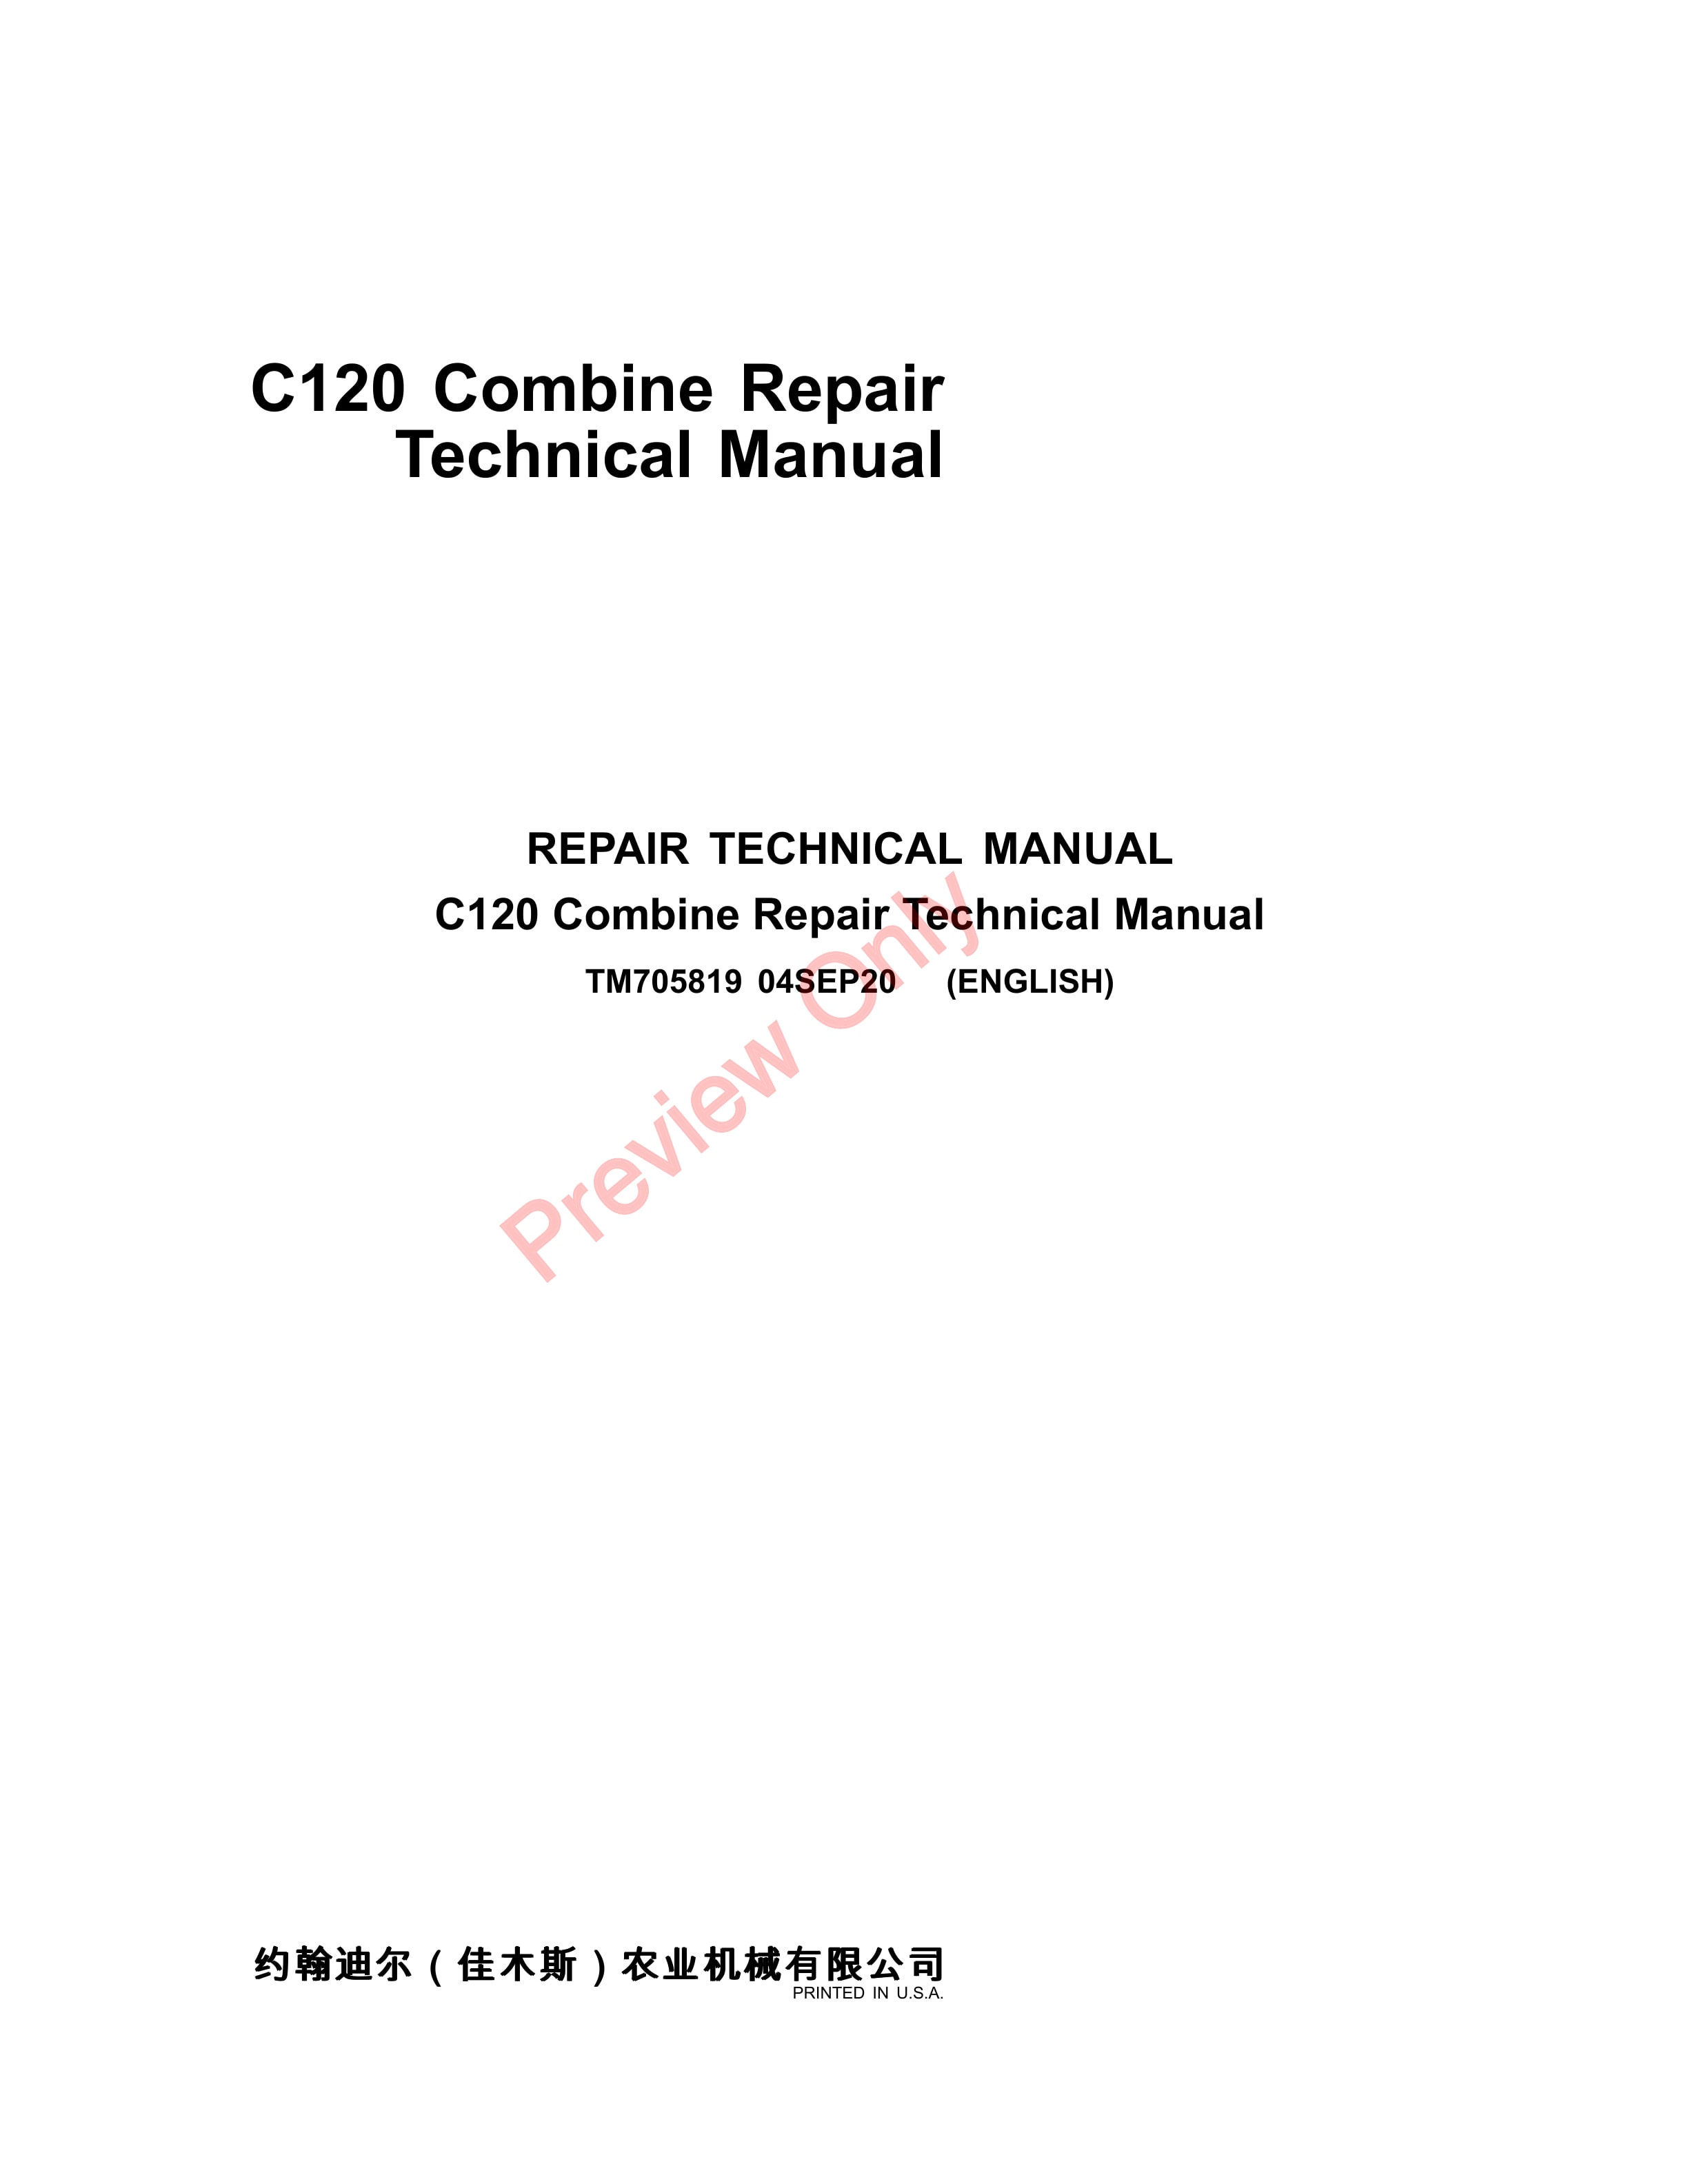 John Deere C120 Combine Repair Technical Manual TM705819 04SEP20 1